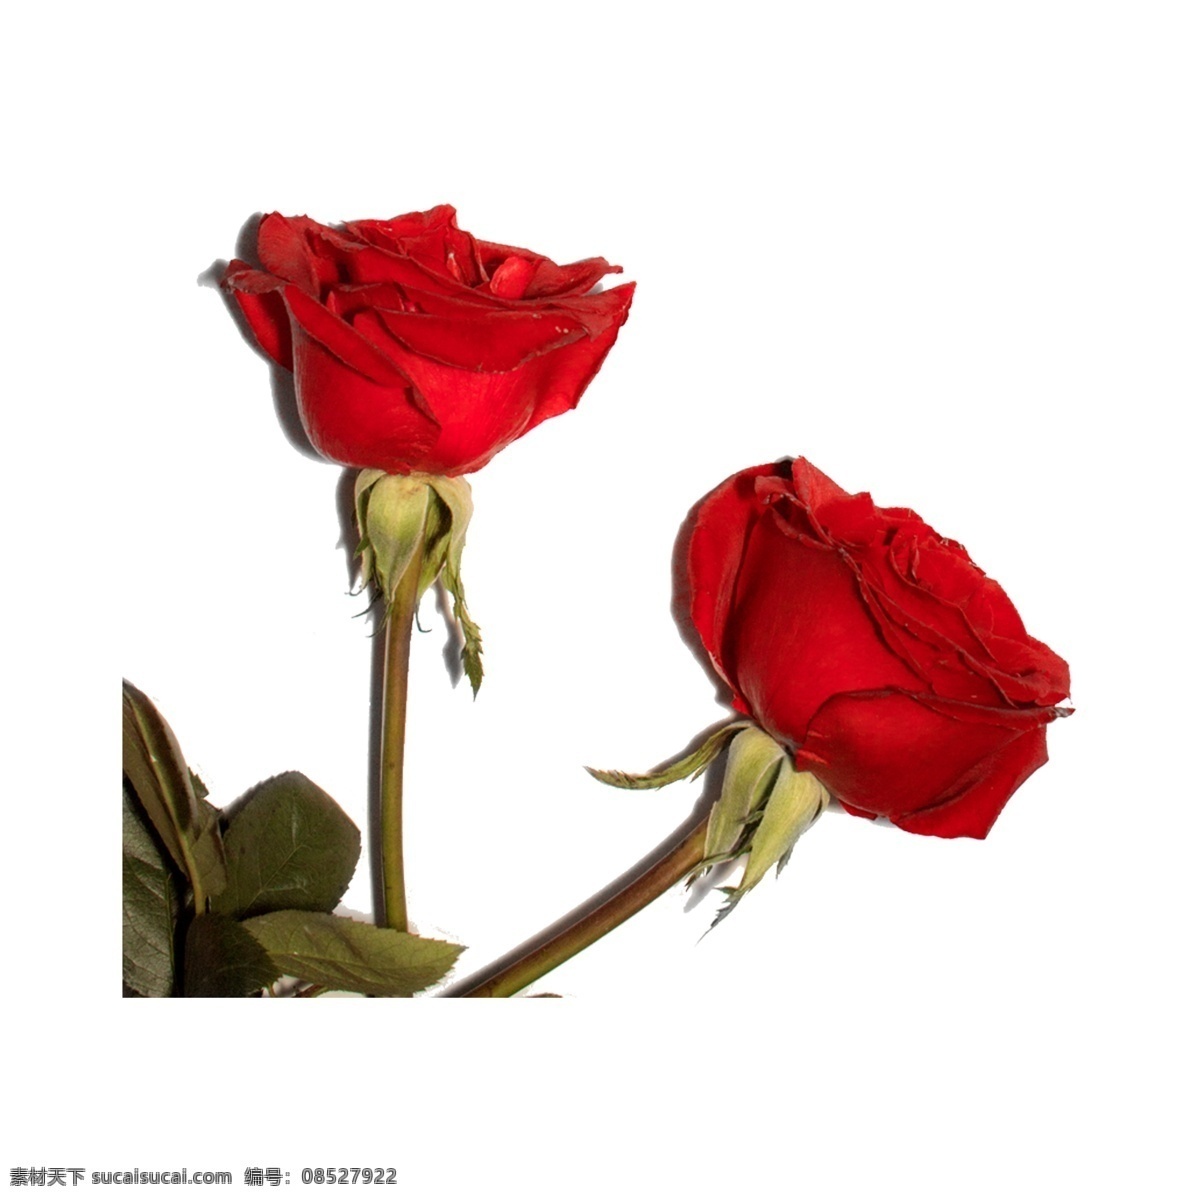 玫瑰花 免 抠 情人节 红玫瑰 情感 植物 水彩 爱情 玫瑰 节日 花卉 花朵 鲜花 两 朵